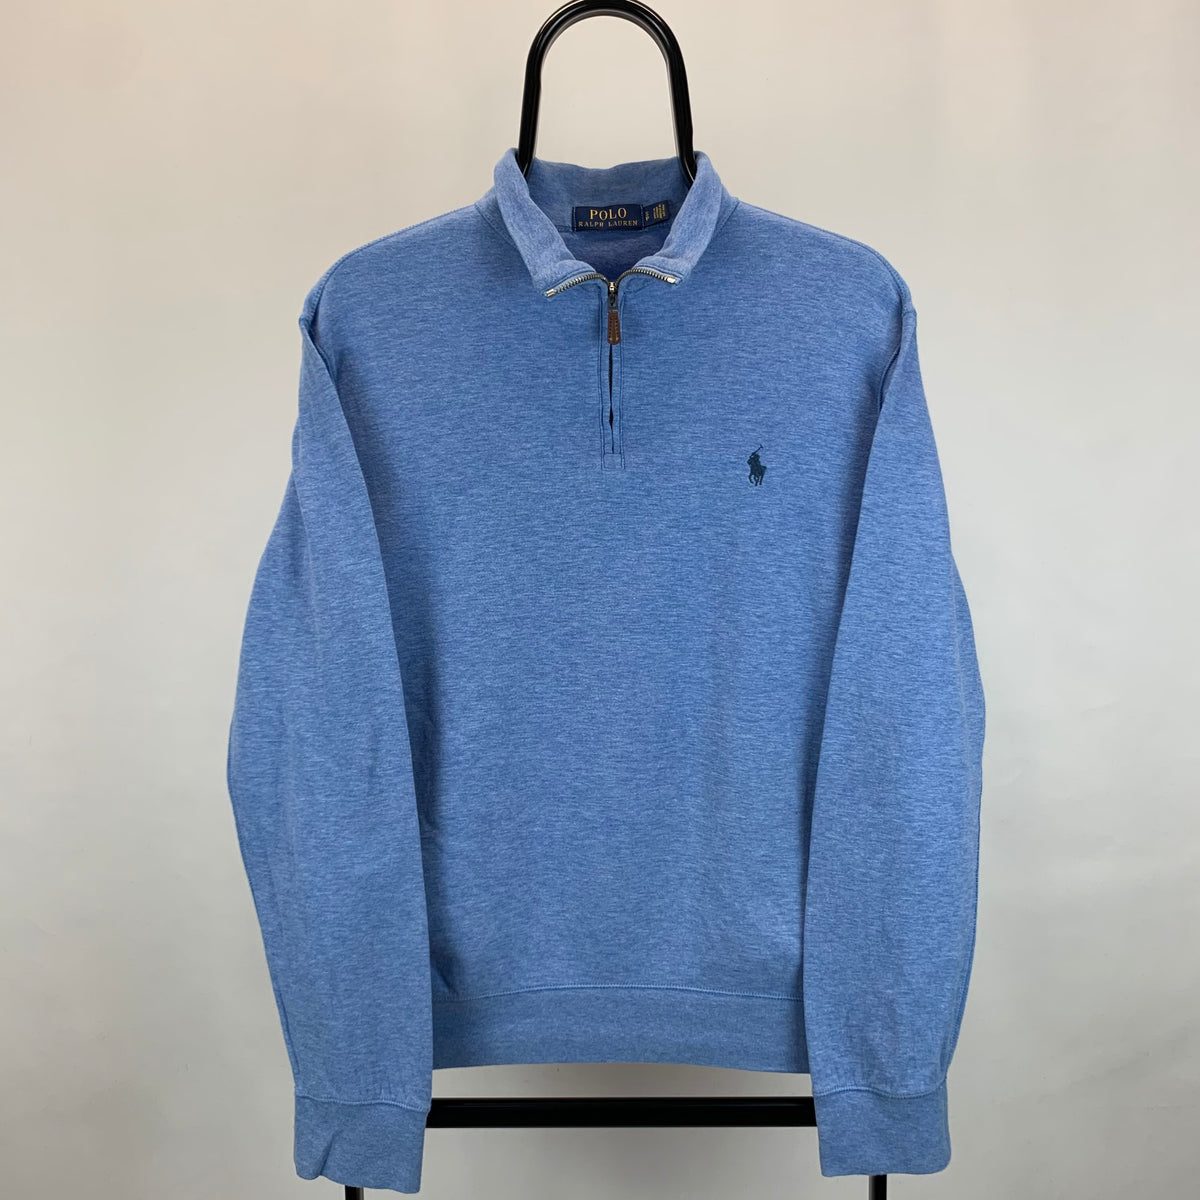 Polo Ralph Lauren 1/4 Zip Lightweight Sweatshirt in Light Blue - Men's -  Vintique Clothing